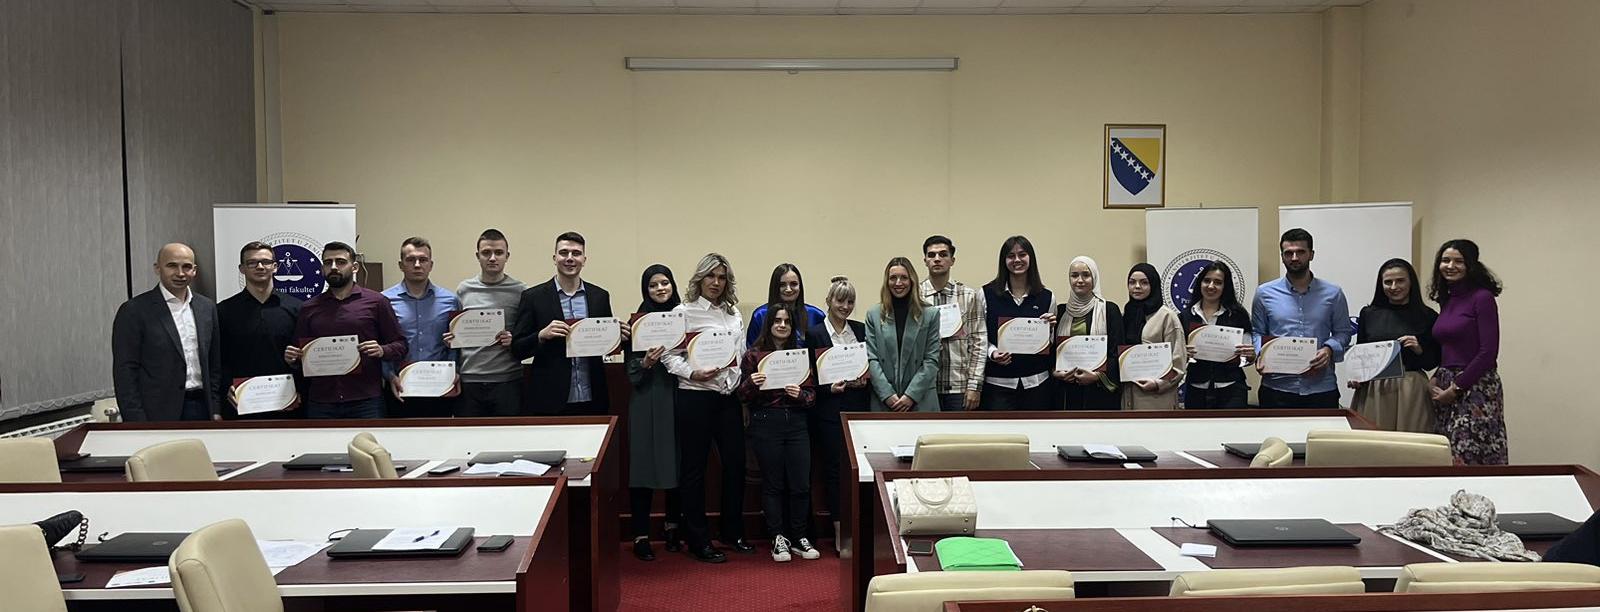 Održana završna simulacija studenata Pravnog fakulteta Univerziteta u Zenici